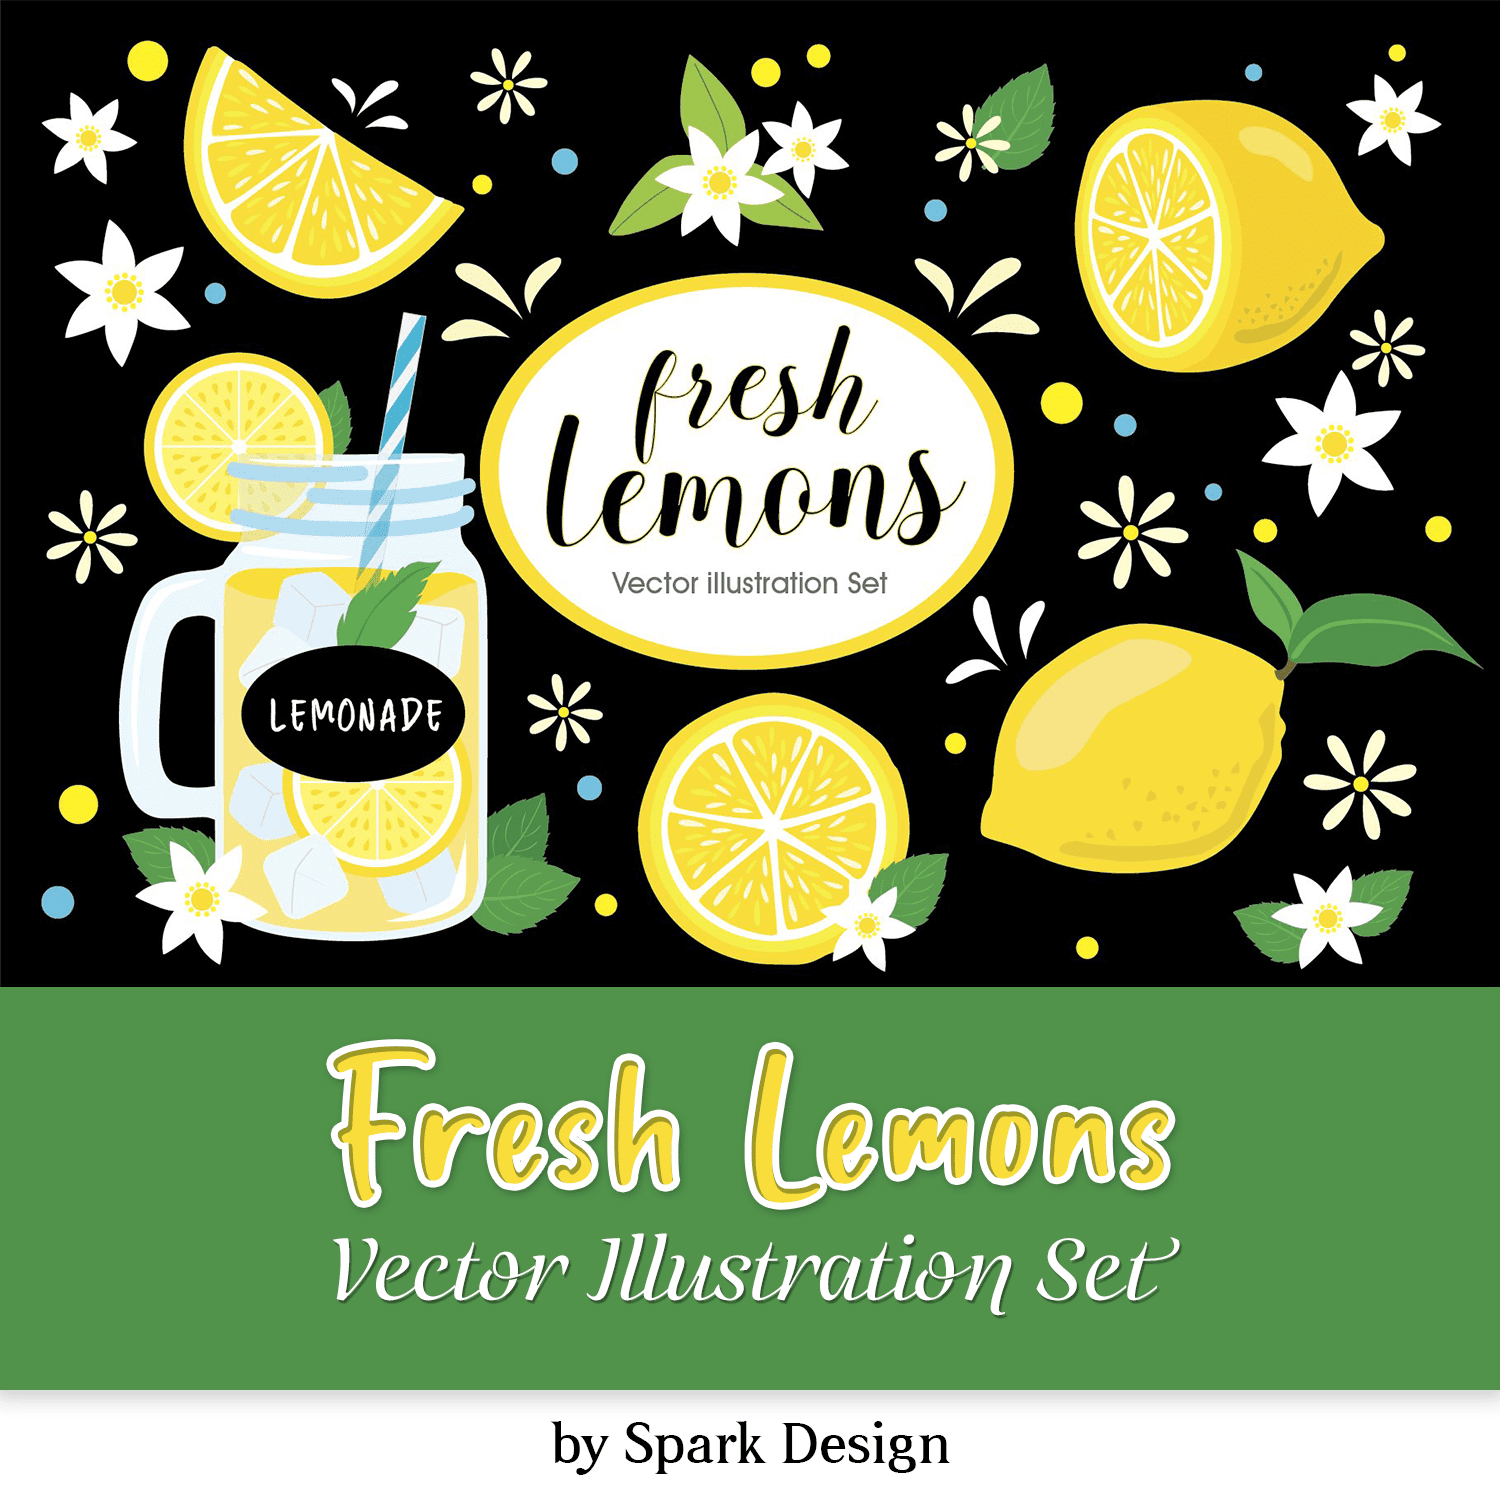 Fresh Lemons Vector Illustration Set cover.